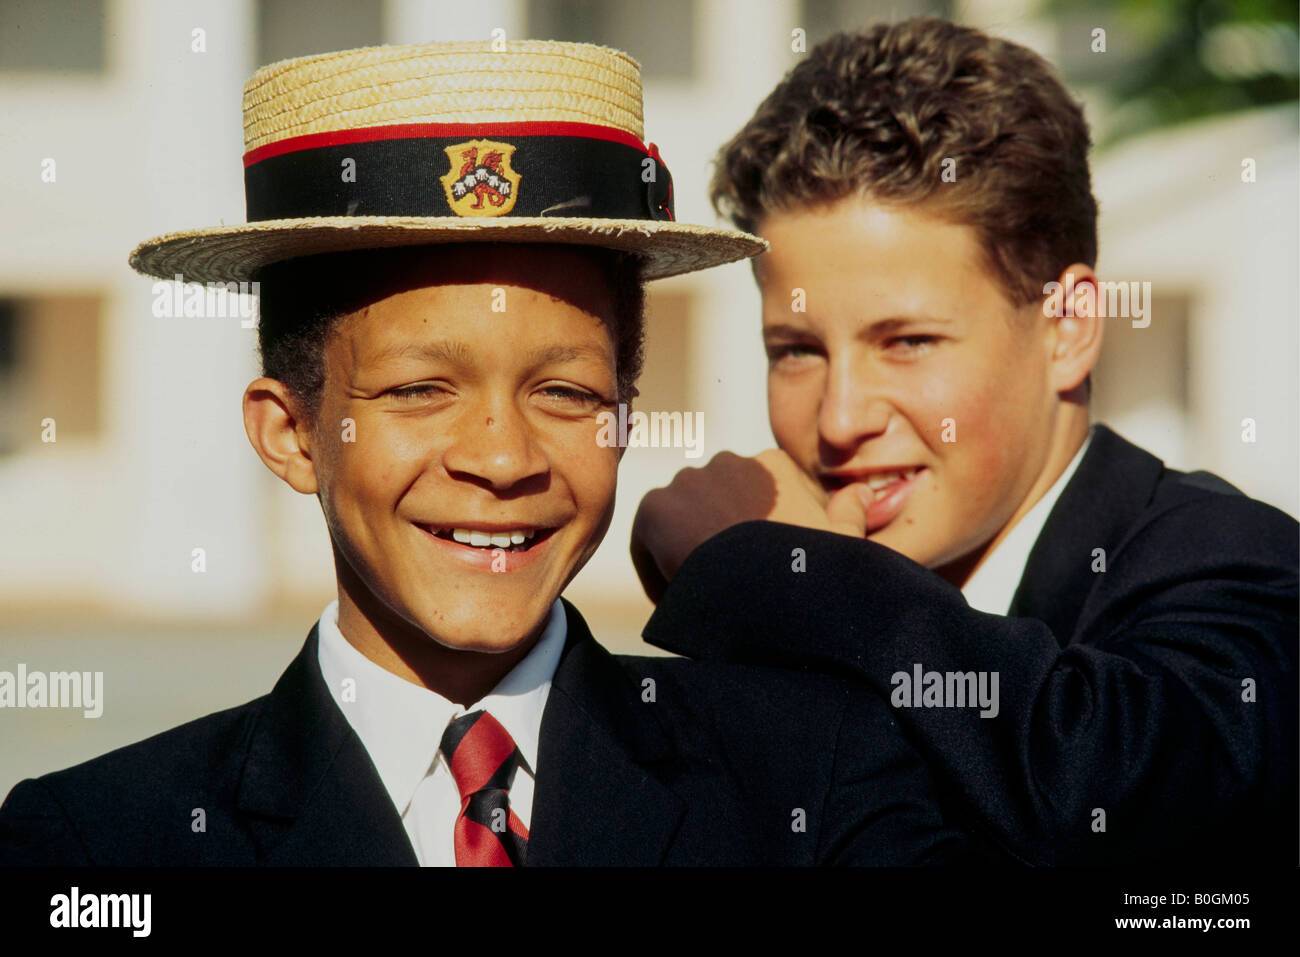 Un portrait de l'école publique de deux garçons portant des uniformes, Grahamstown, Afrique du Sud. Banque D'Images